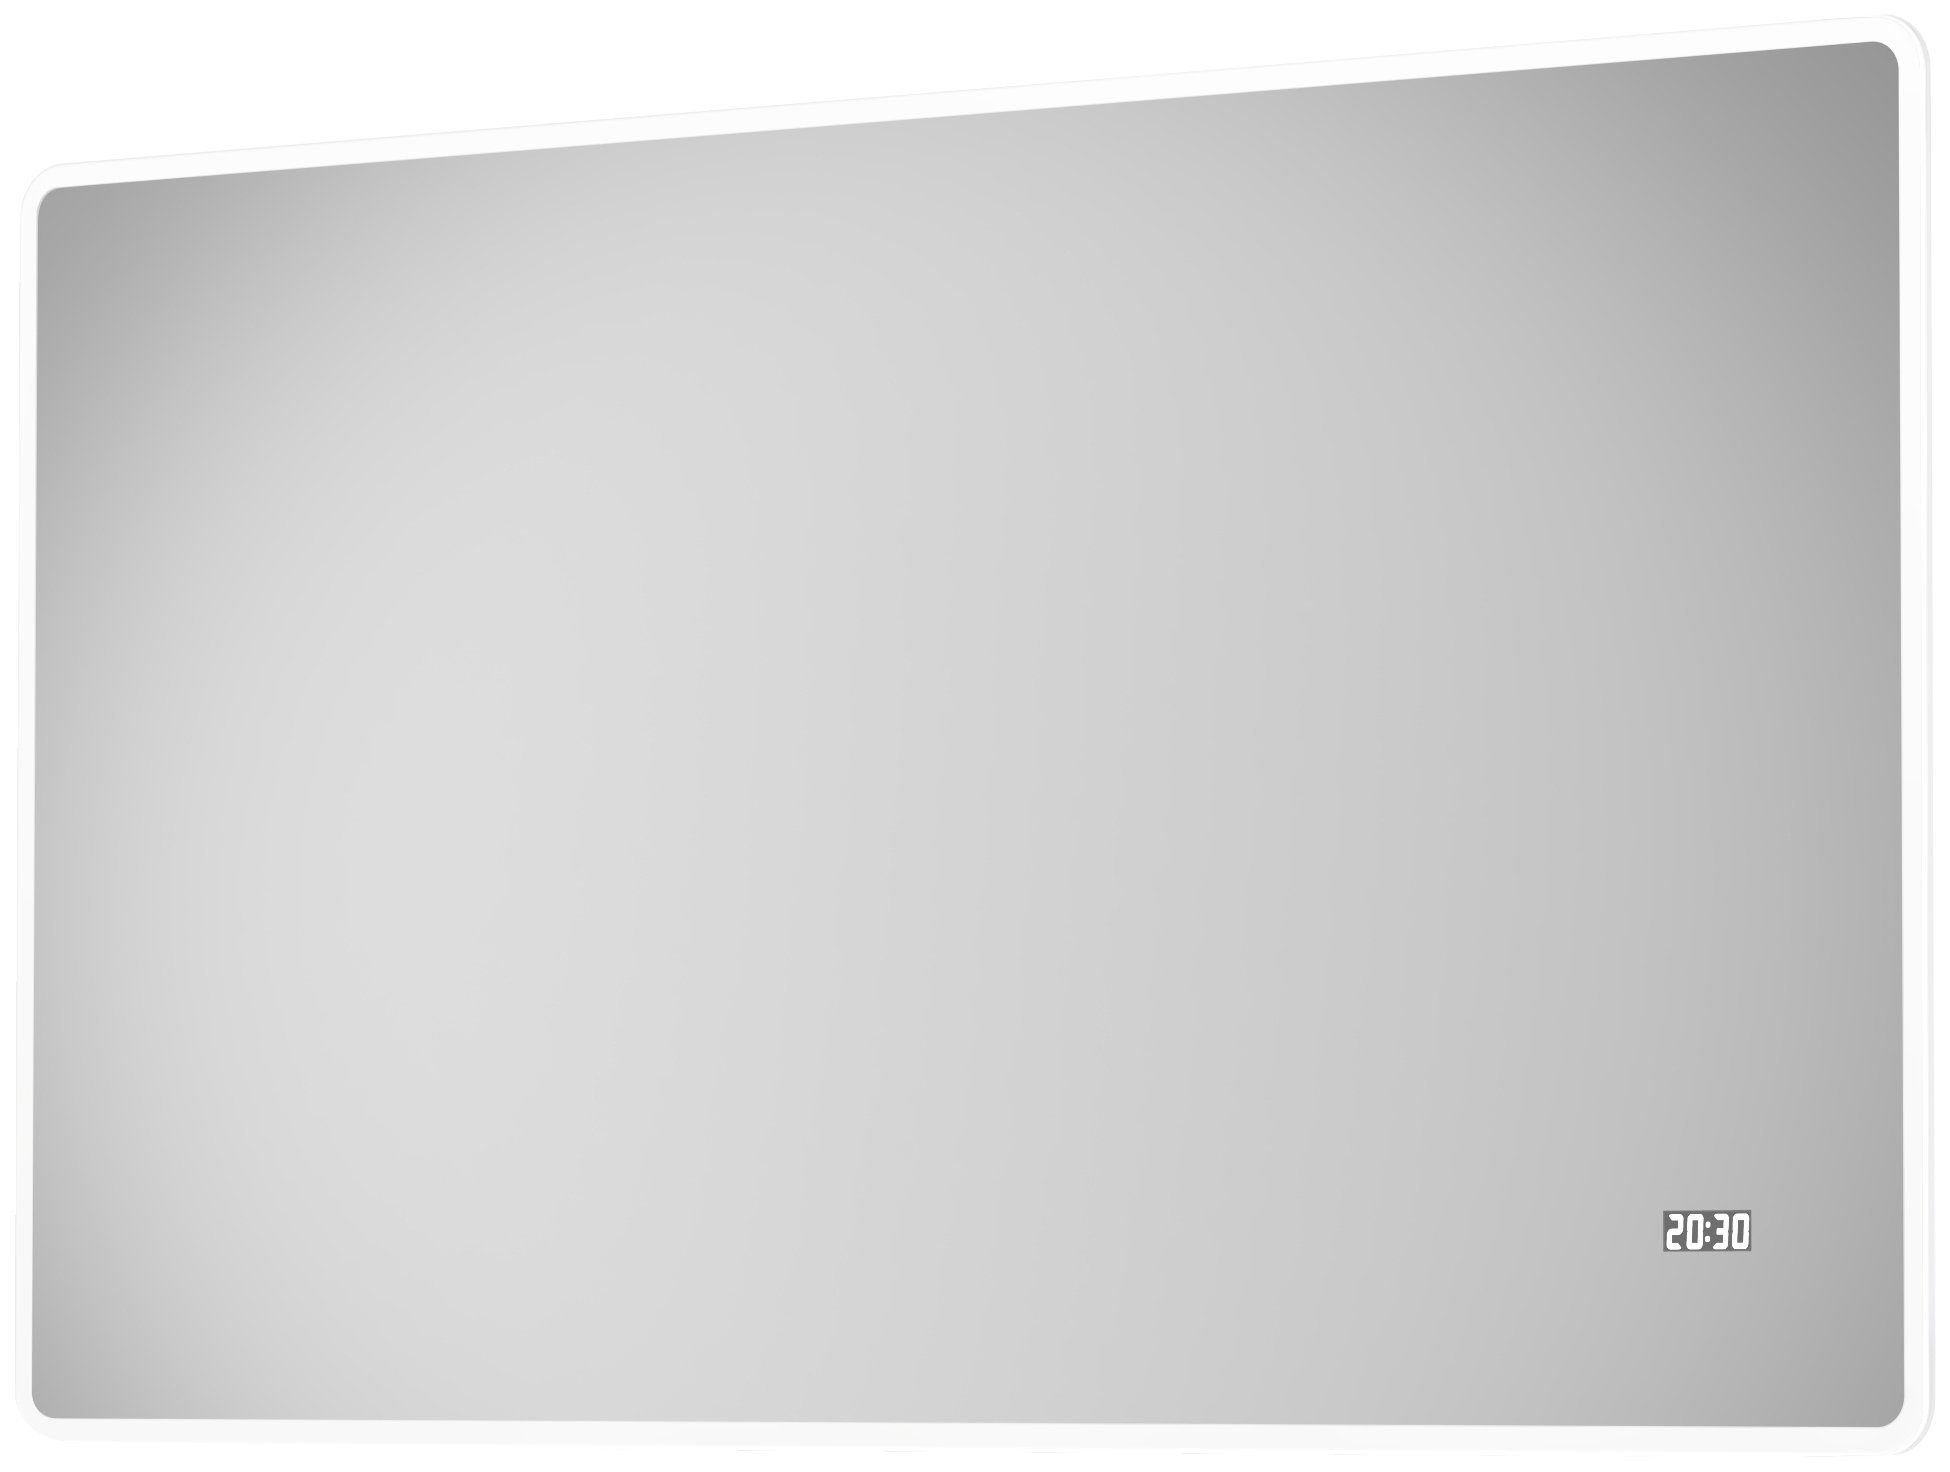 Badspiegel Sun, energiesparend, Talos Digitaluhr cm, BxH: mit 120x70